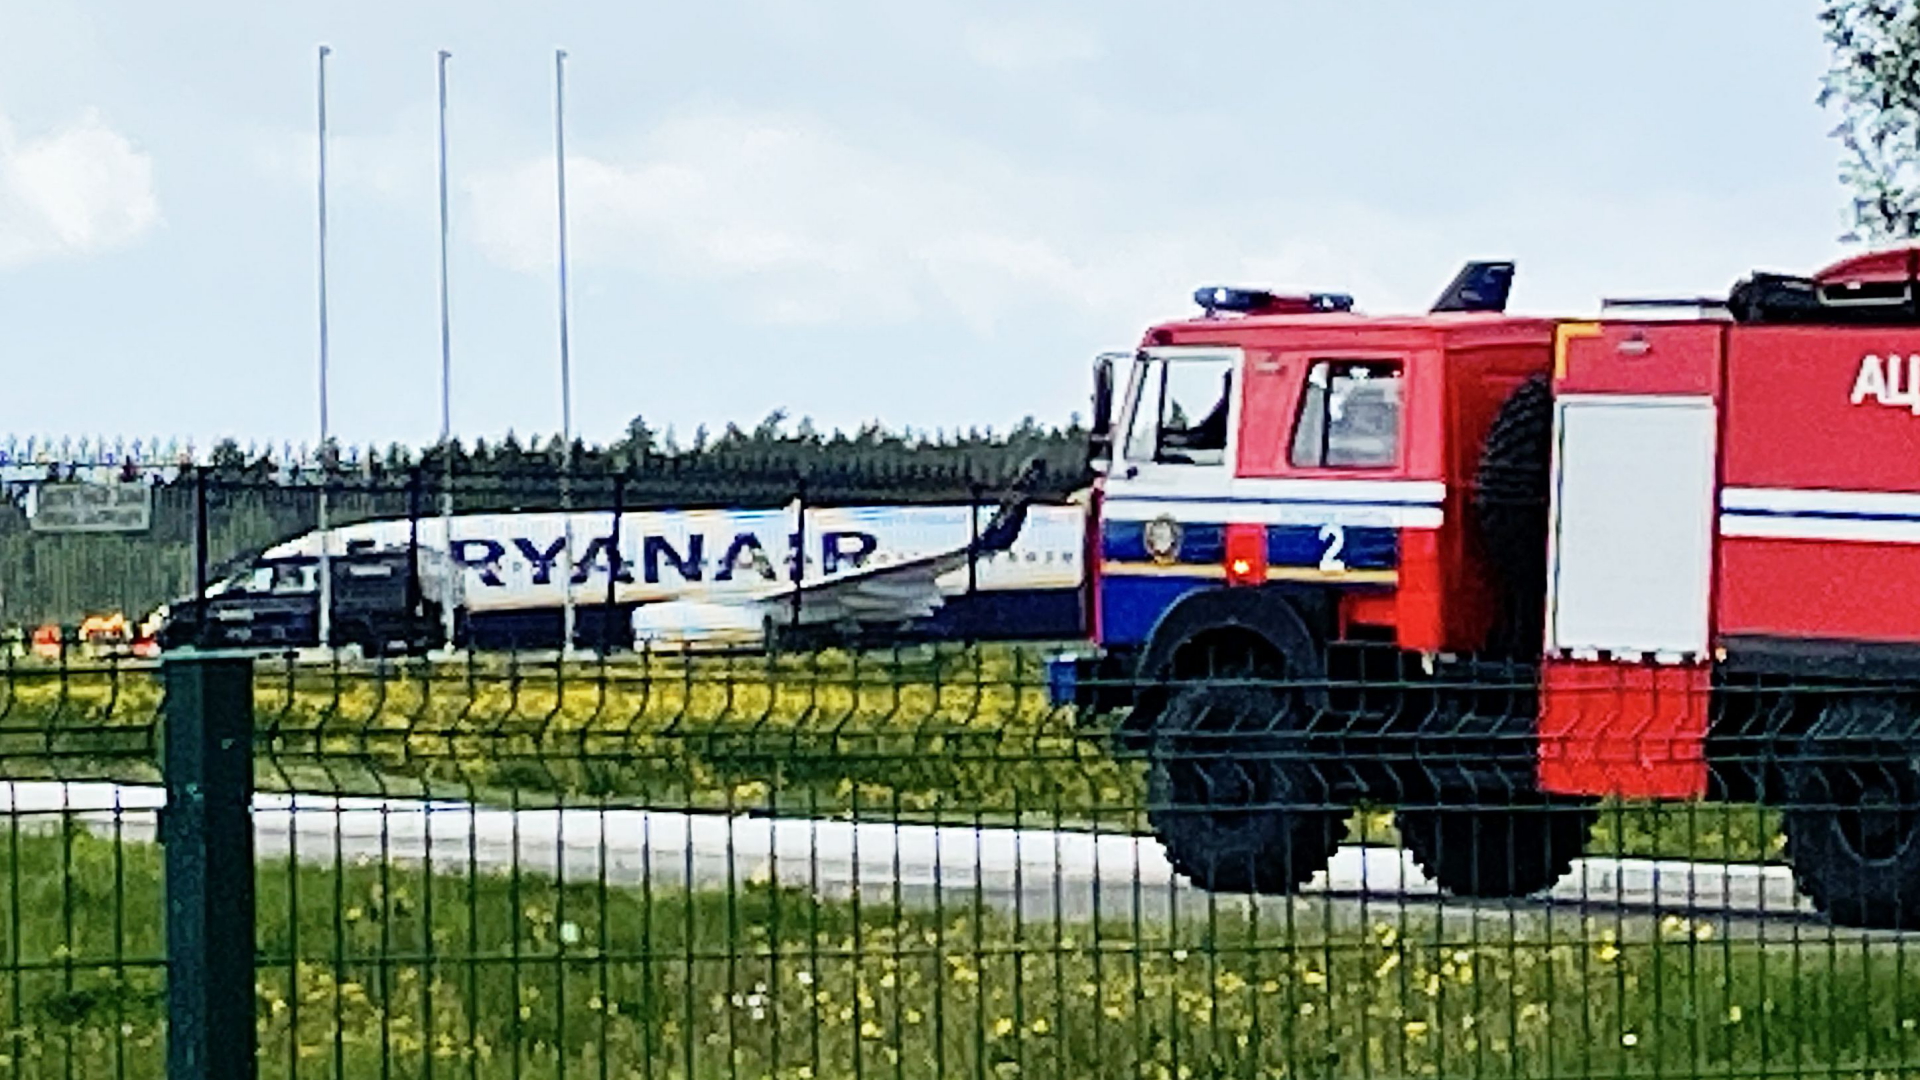 Wegen einer vermeintlichen Bombendrohung musste die Ryan-Air-Maschine mit einem belrarusischen Oppositionellen in Minsk notlanden. | AFP